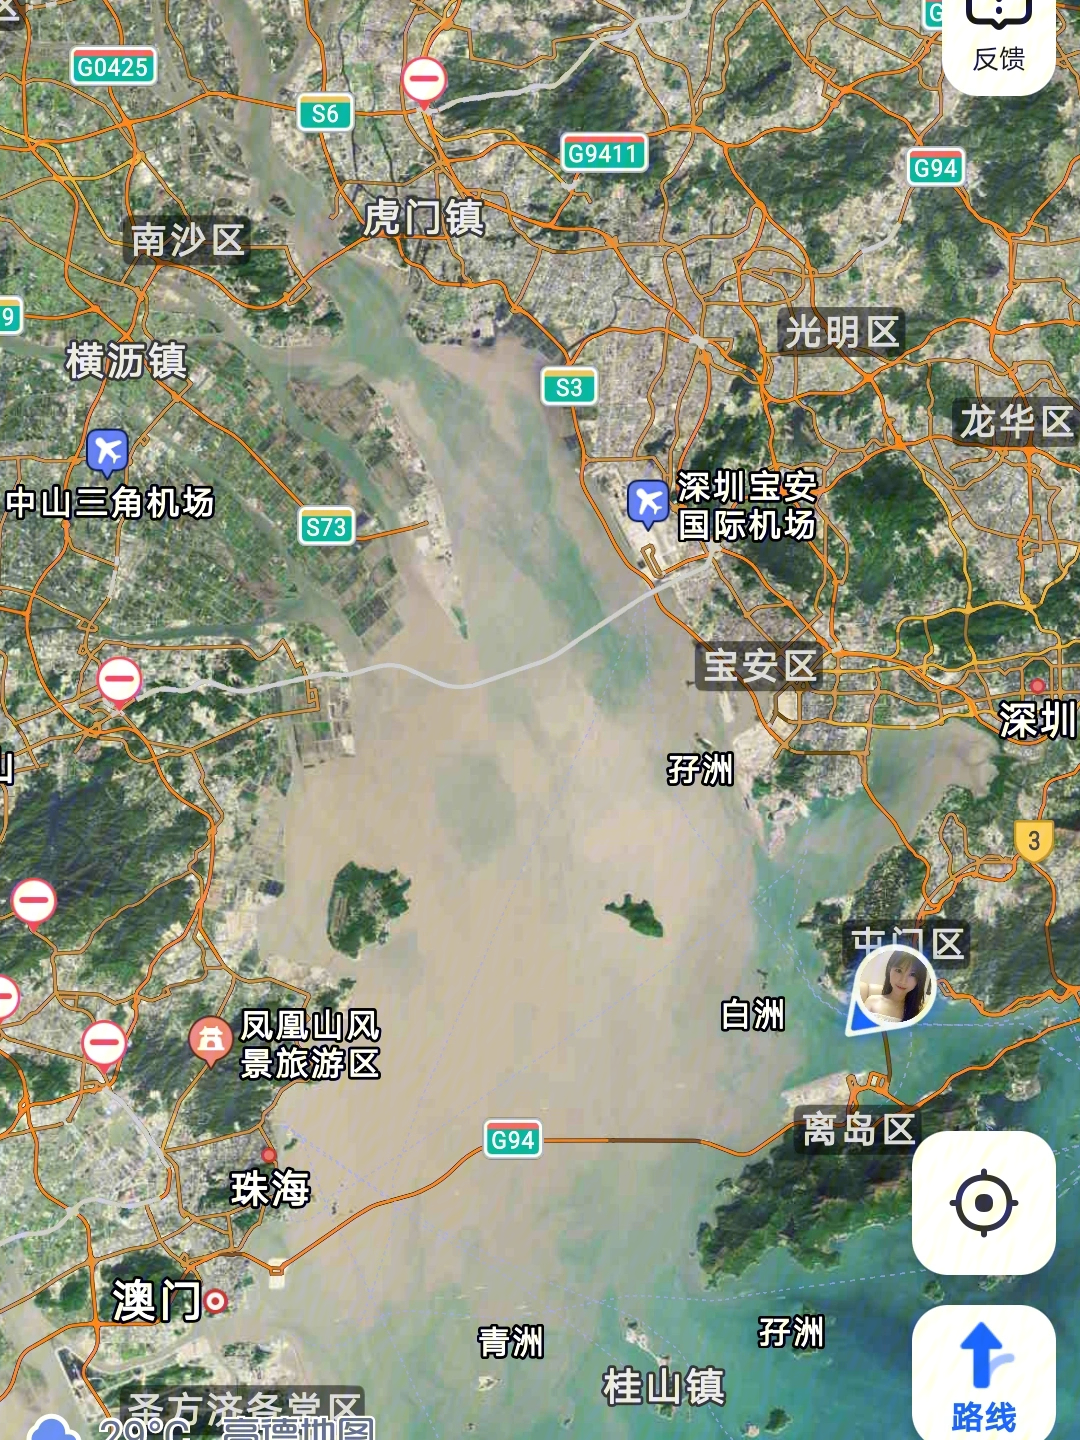 上周六跟着某人去了趟屯门一路轻铁,仿佛回到90年代的香港看着地图